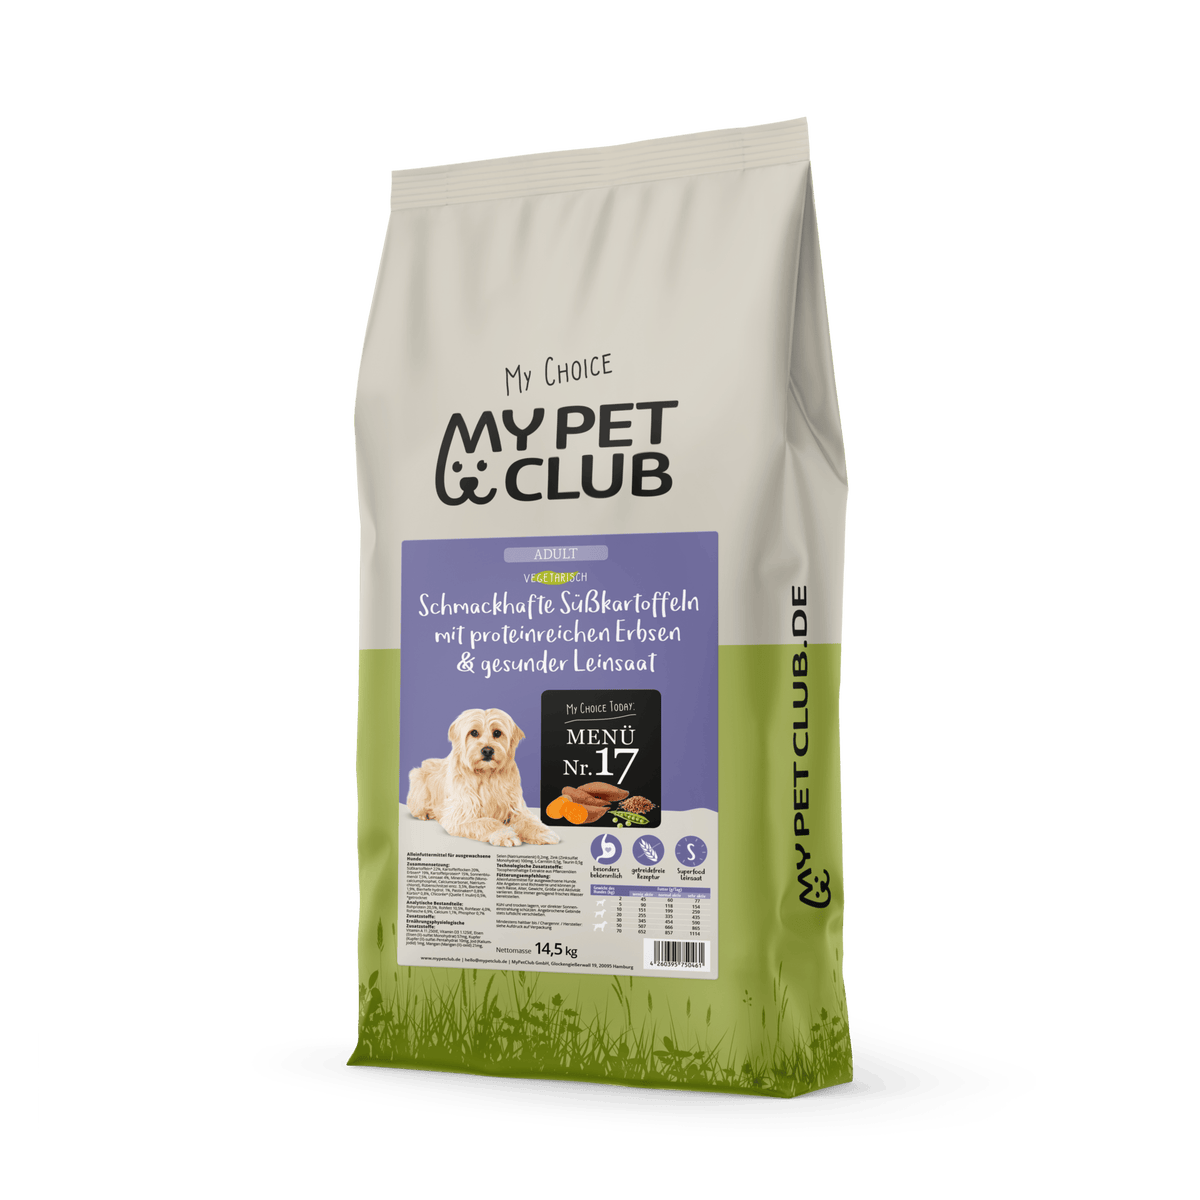 Vegi (1 x 8 kg) vegan/vegetarisches Hundefutter Purinarm mit Süßkartoffel I Sensitiv &amp; Hypoallergen I Alleinfuttermittel für Hunde ab dem 12ten Lebensmonat